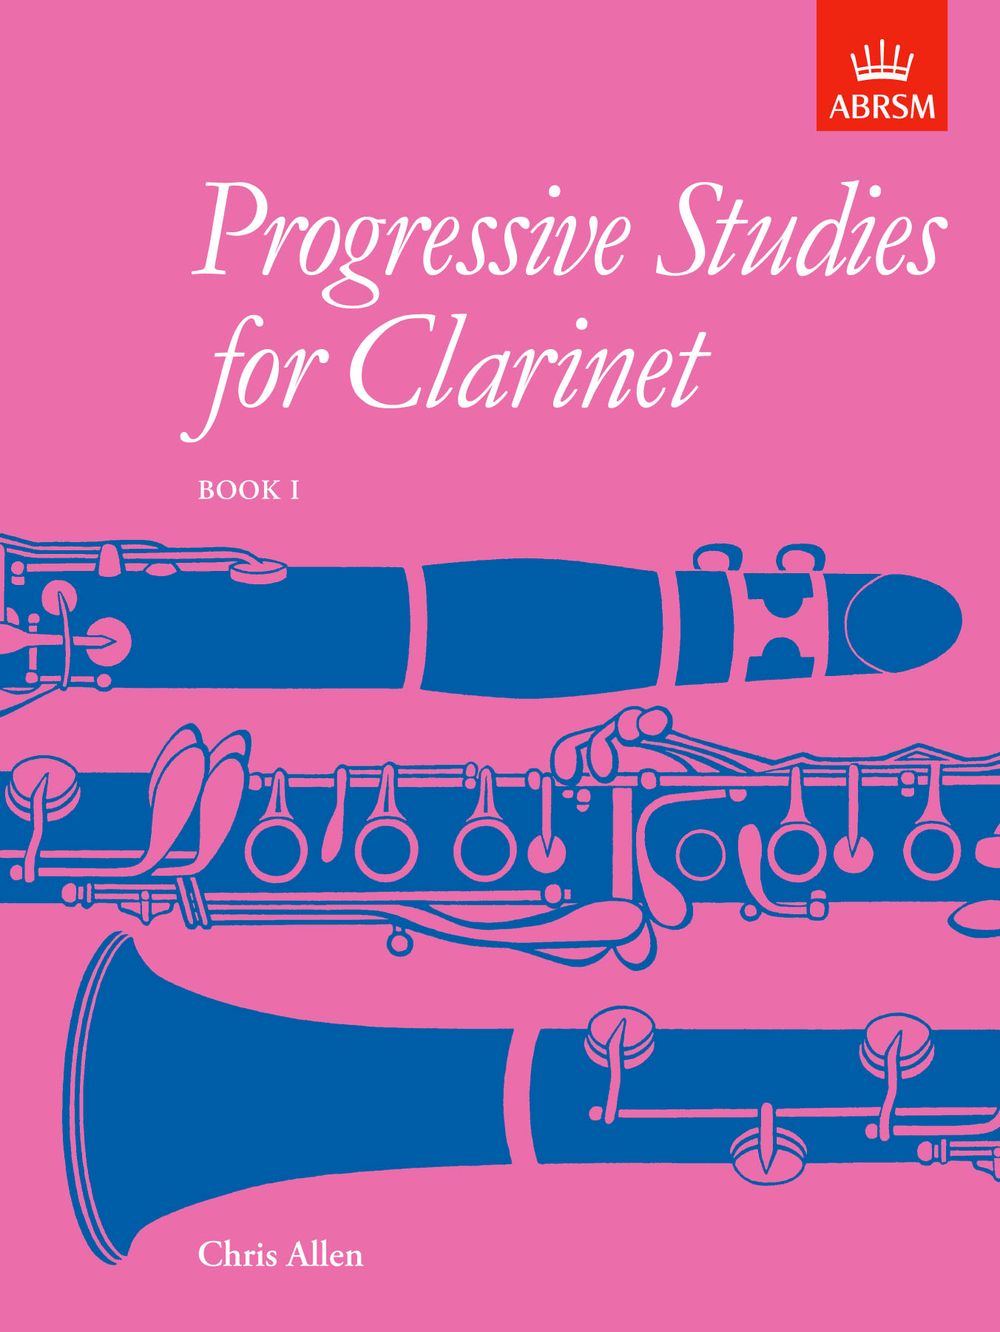 Progressive Studies For Clarinet Book 1 Allen 1-5 Sheet Music Songbook